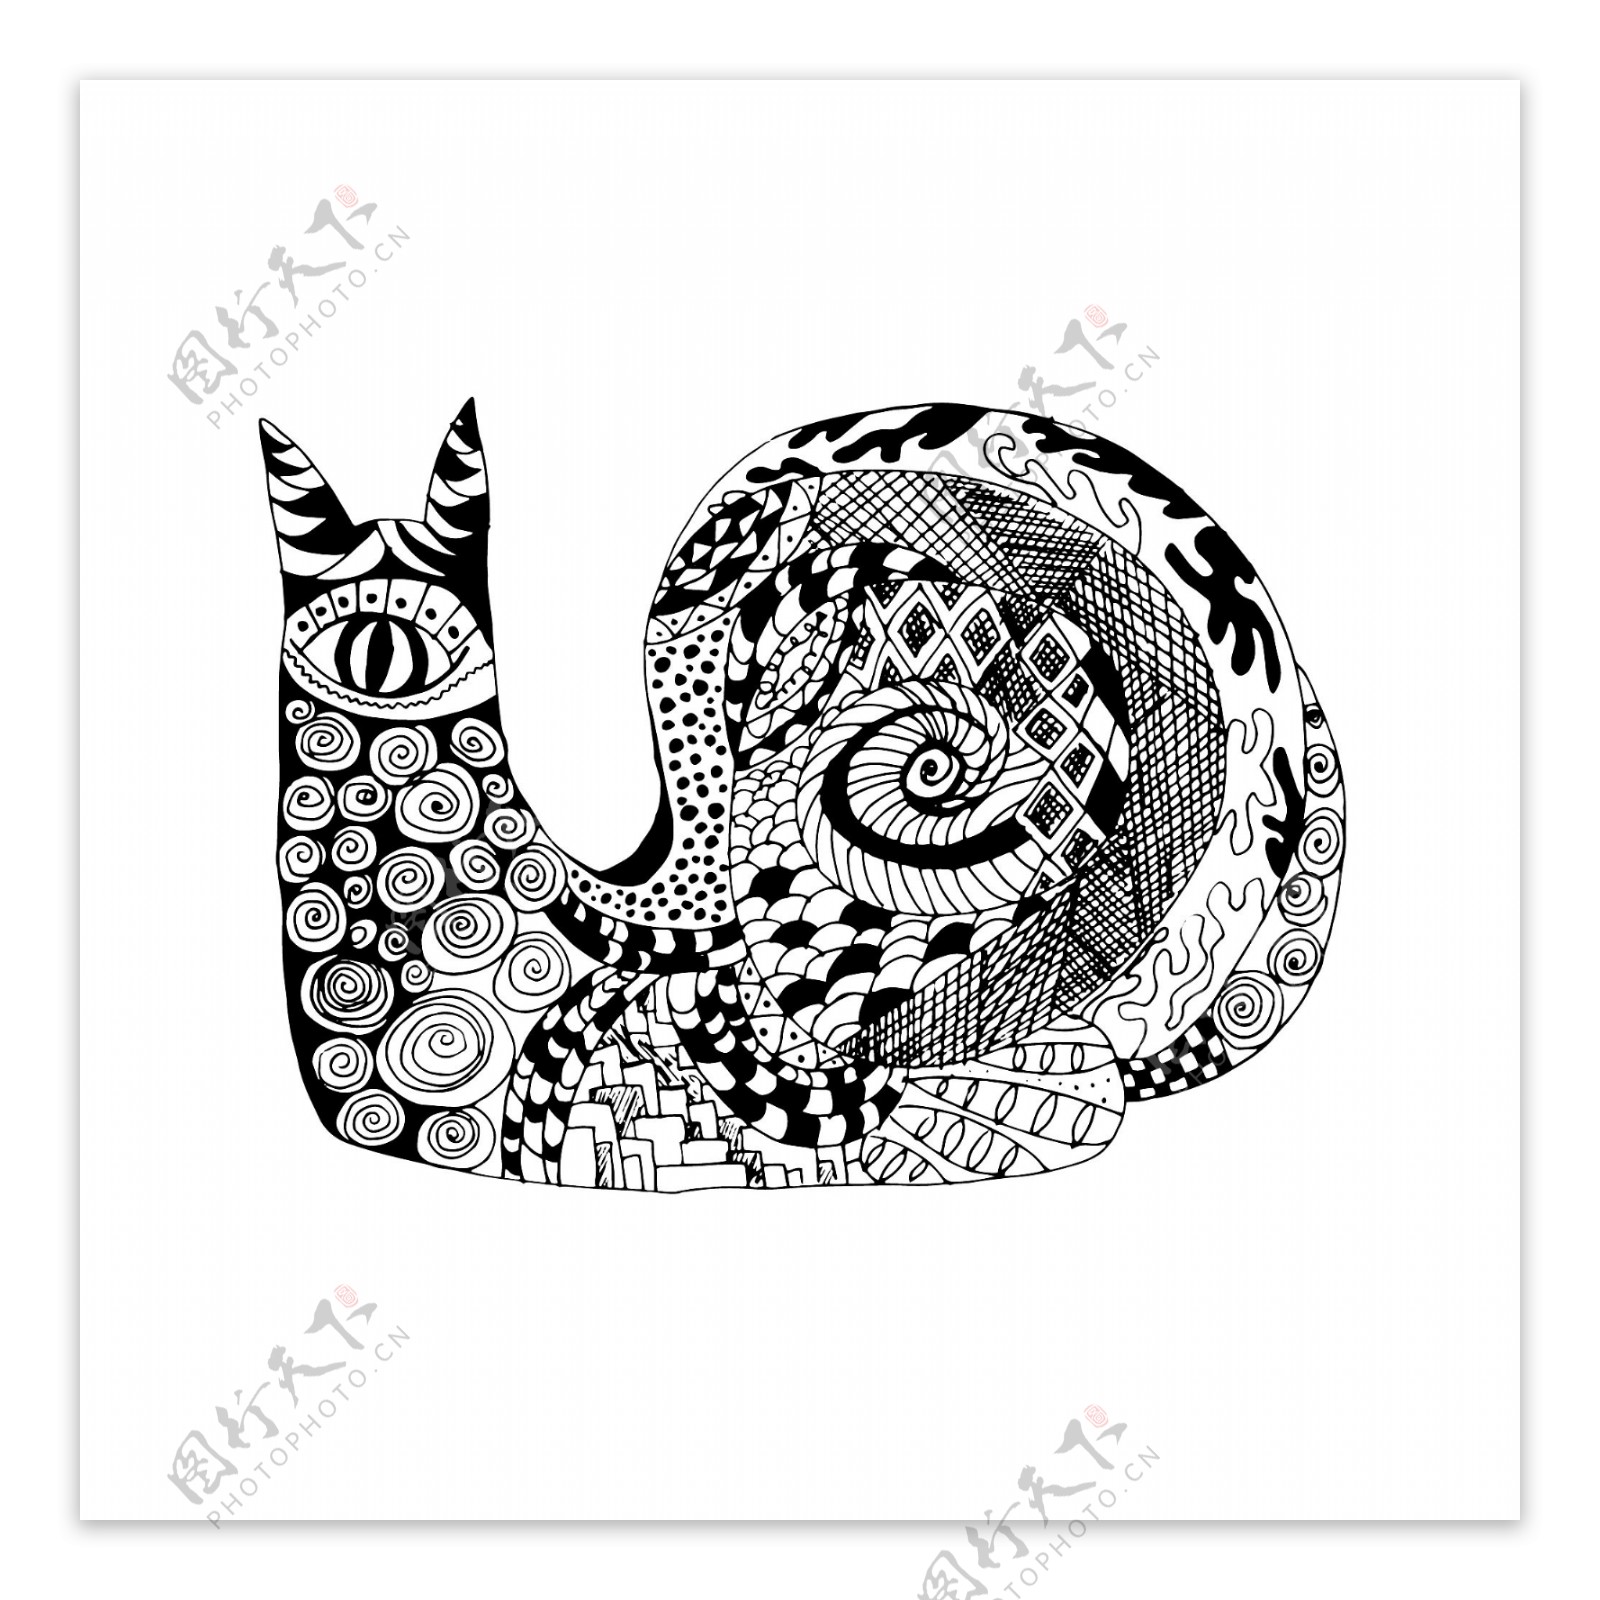 黑白时尚艺术蜗牛插画